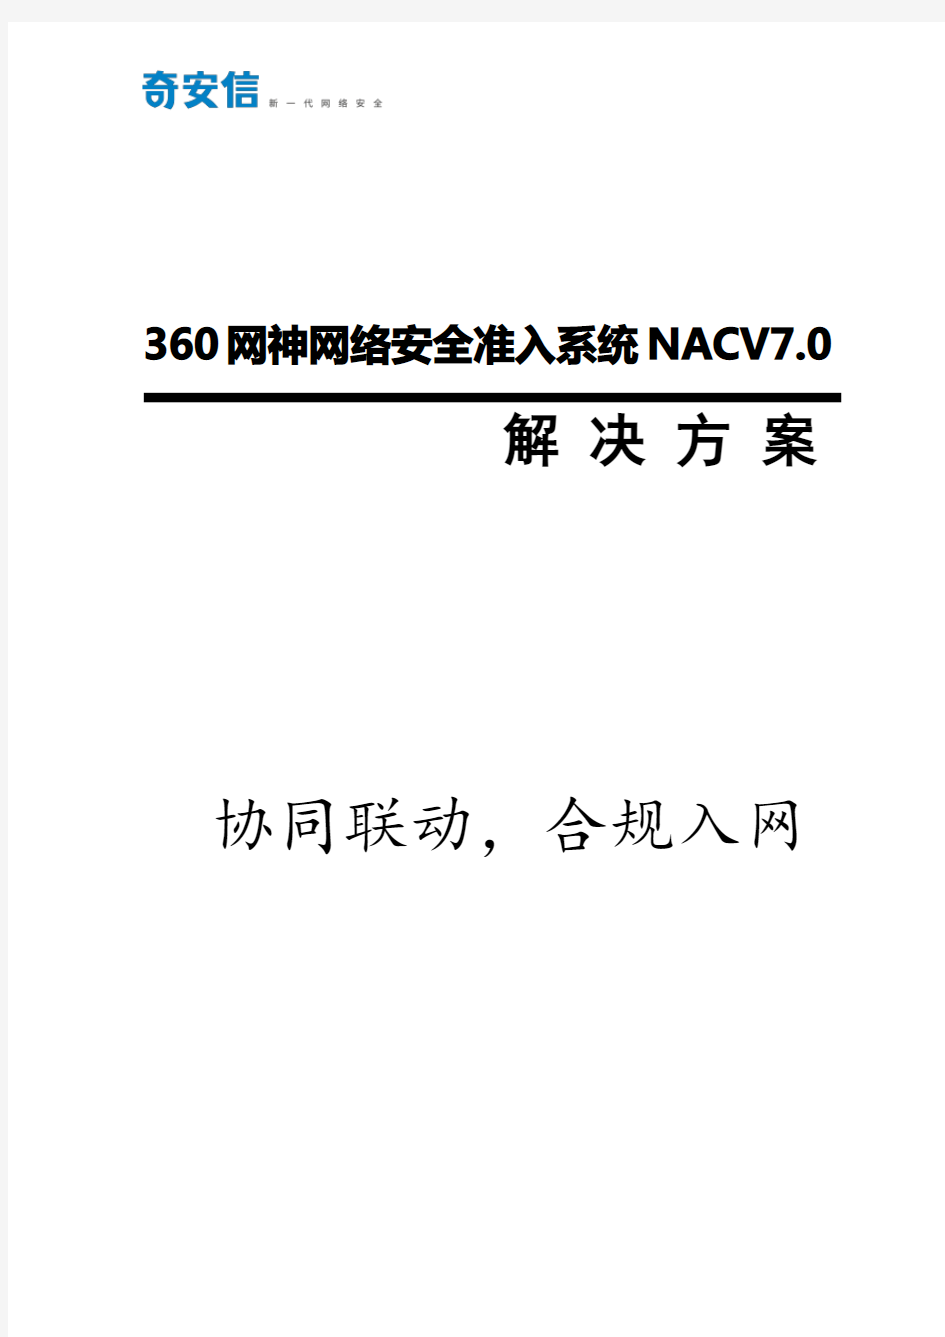 信息安全-20190501-360网神网络安全准入系统-NACV7.0-强制合规(NAC)产品解决方案-V1.0